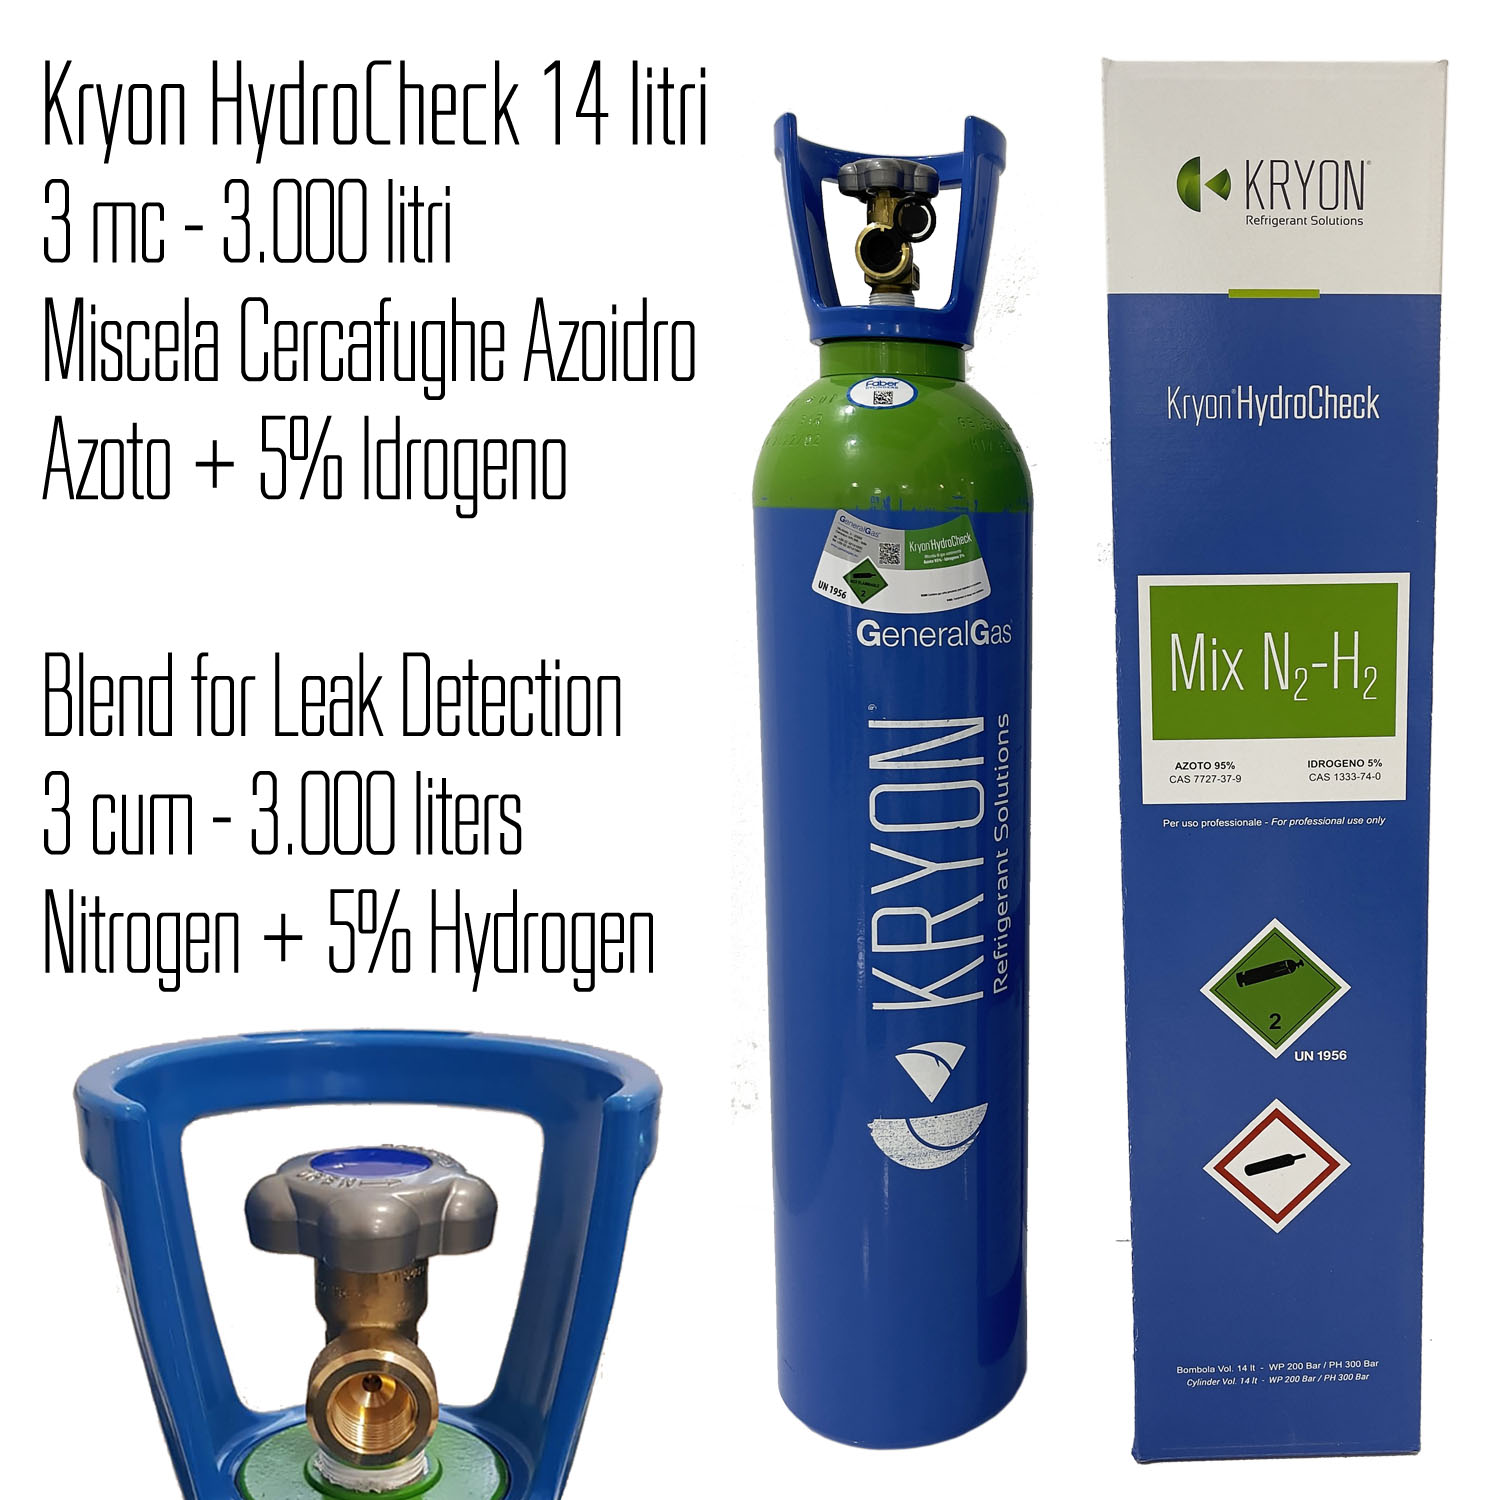 Bombola Kryon® HydroCheck azoto/idrogeno 5% - 14 lt / 3mc in scatola di cartone (usufruisce servizio HandyGas cambio immediato vuoto contro pieno)